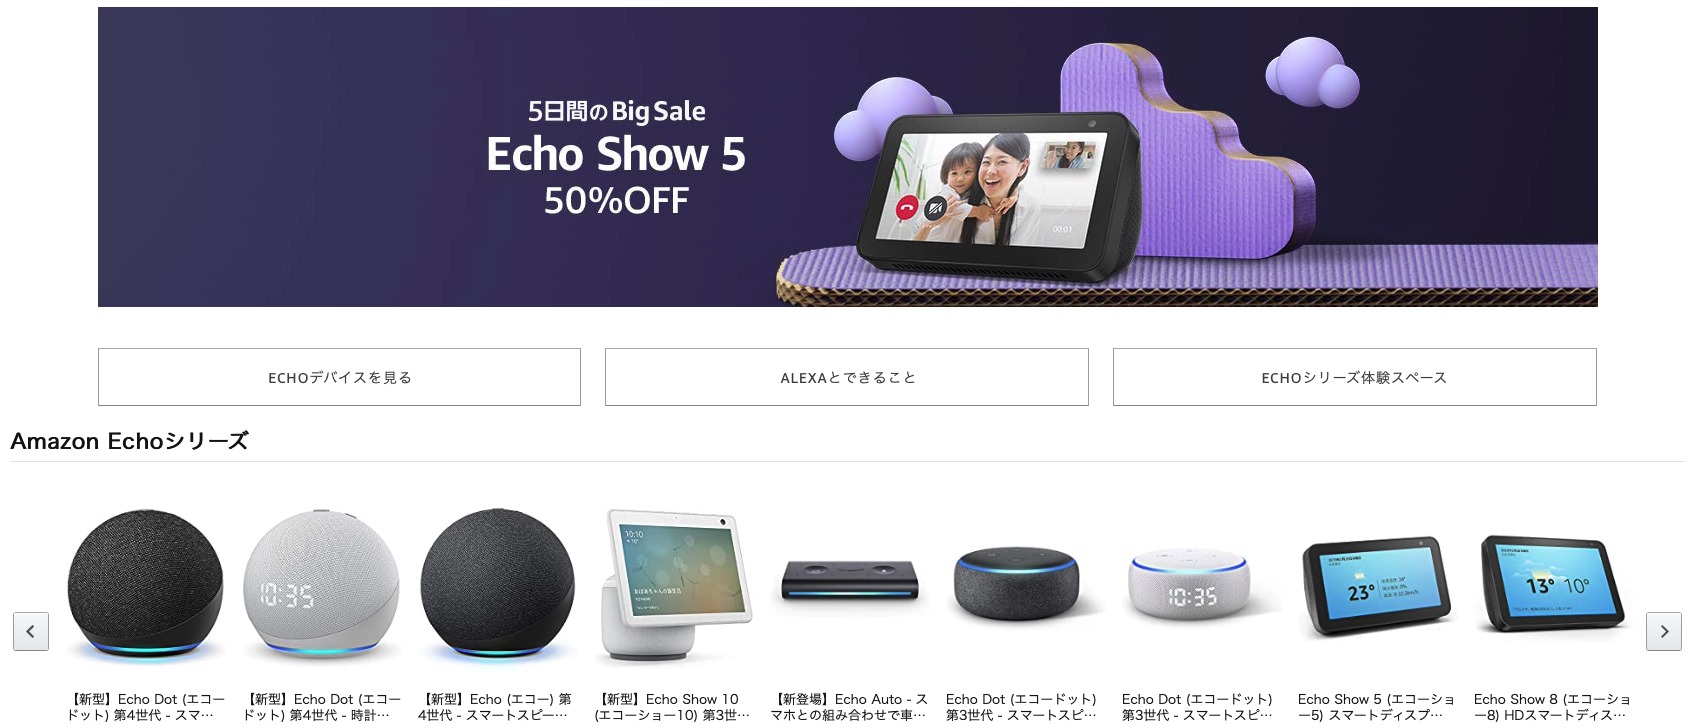 Amazon Echo セール